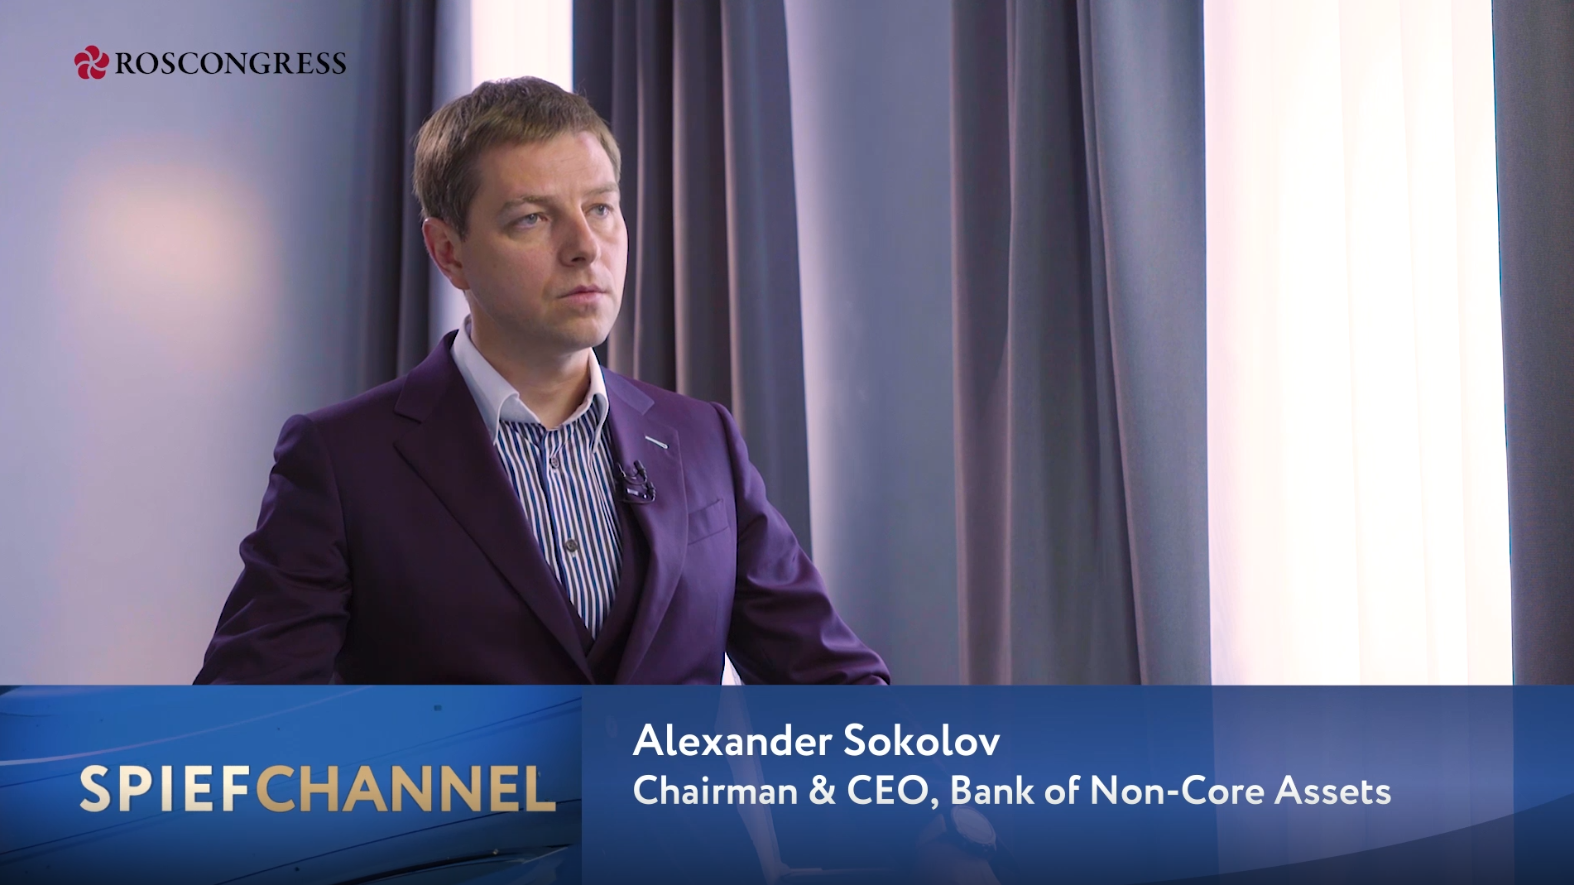 Alexander Sokolov, Bank of Non-Core Assets